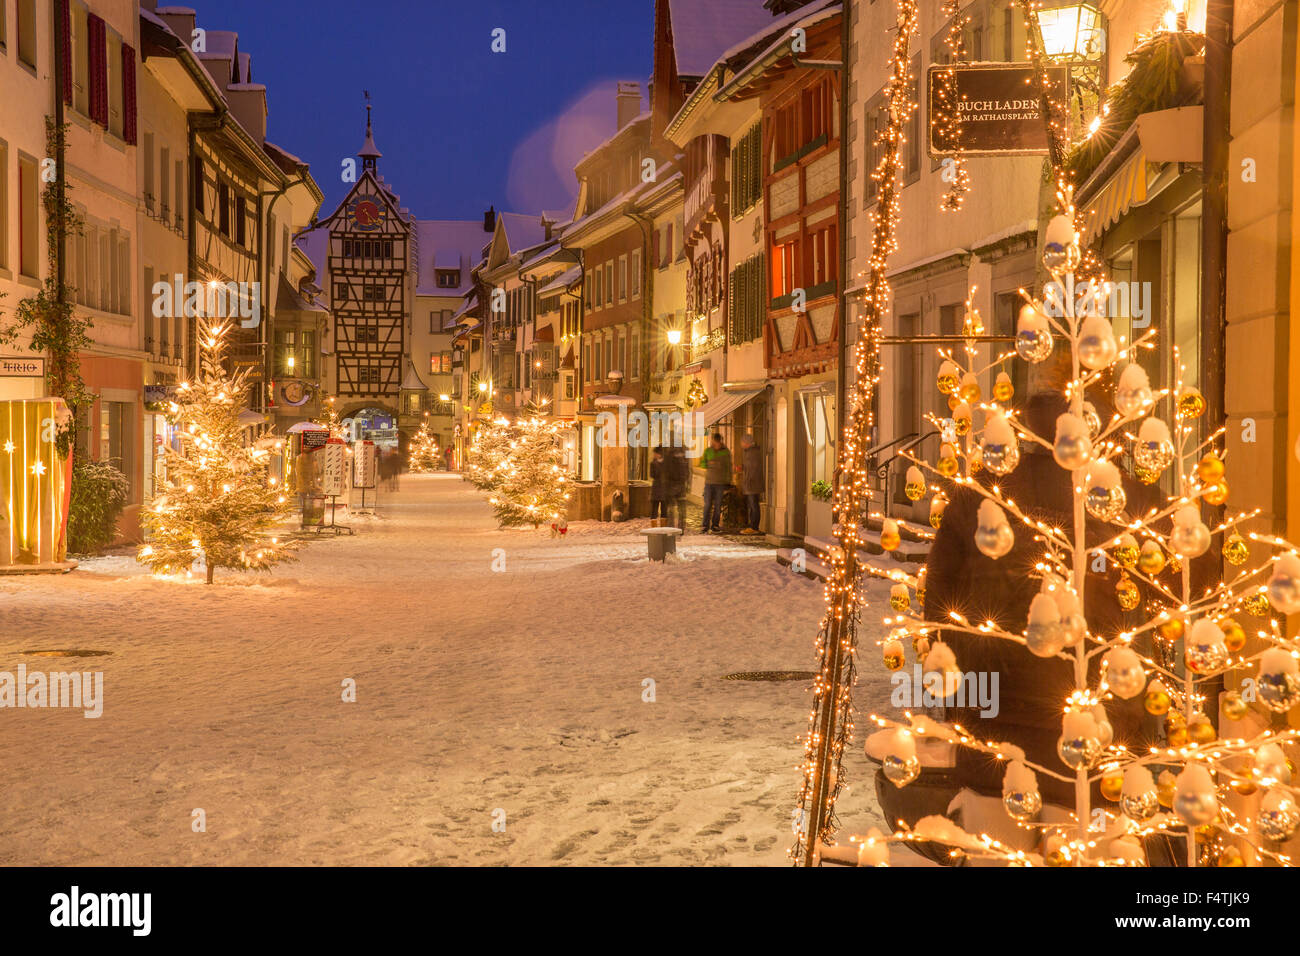 Winter, town, Stein am Rhein, Stock Photo